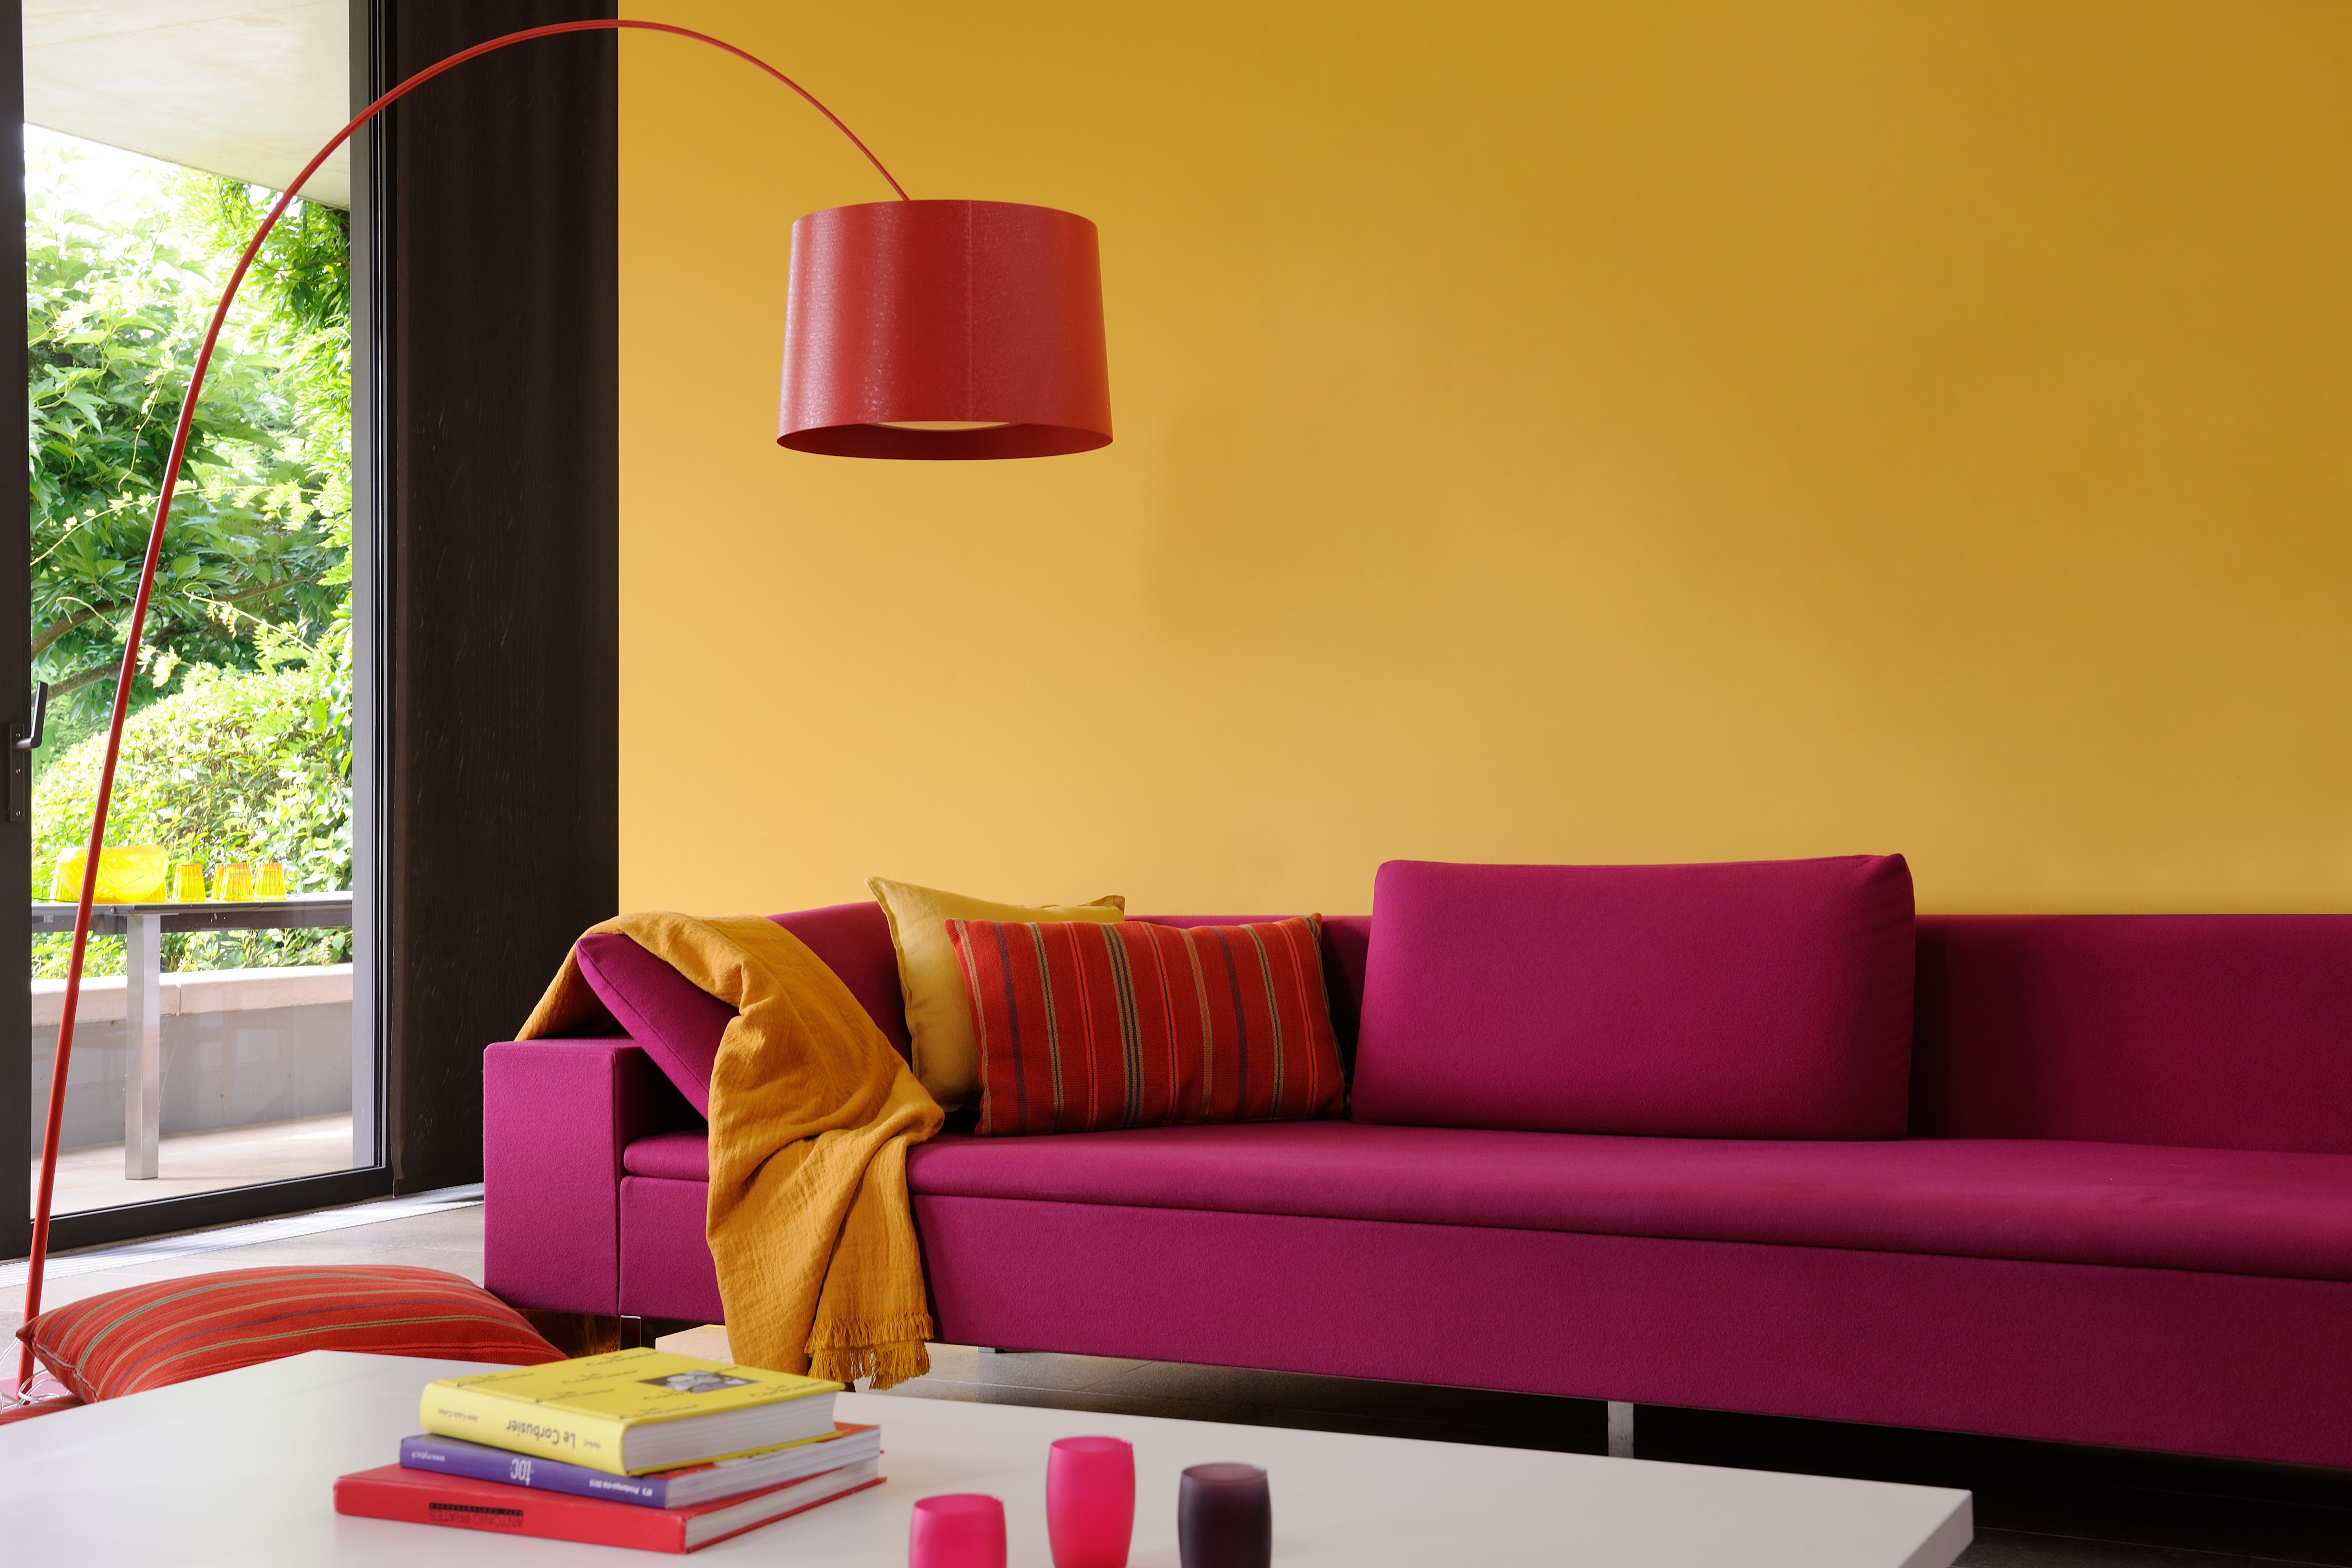 Salon réalisée avec de la peinture intérieure dans les tons de jaune et de rouge